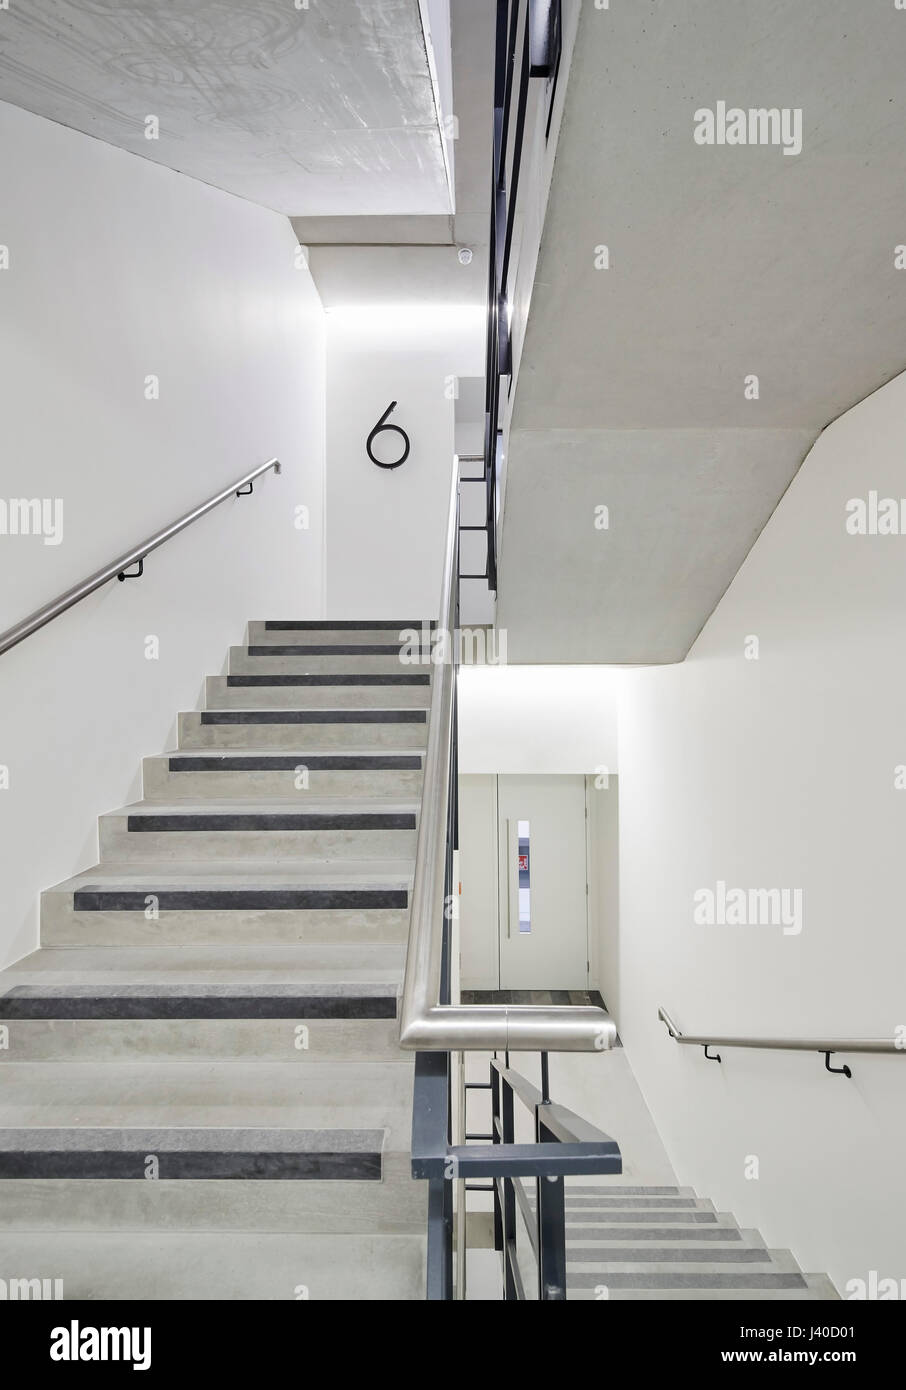 Treppenhaus. Chancery Lane, London, Vereinigtes Königreich. Architekt: Bennetts Associates Architects, 2015. Stockfoto